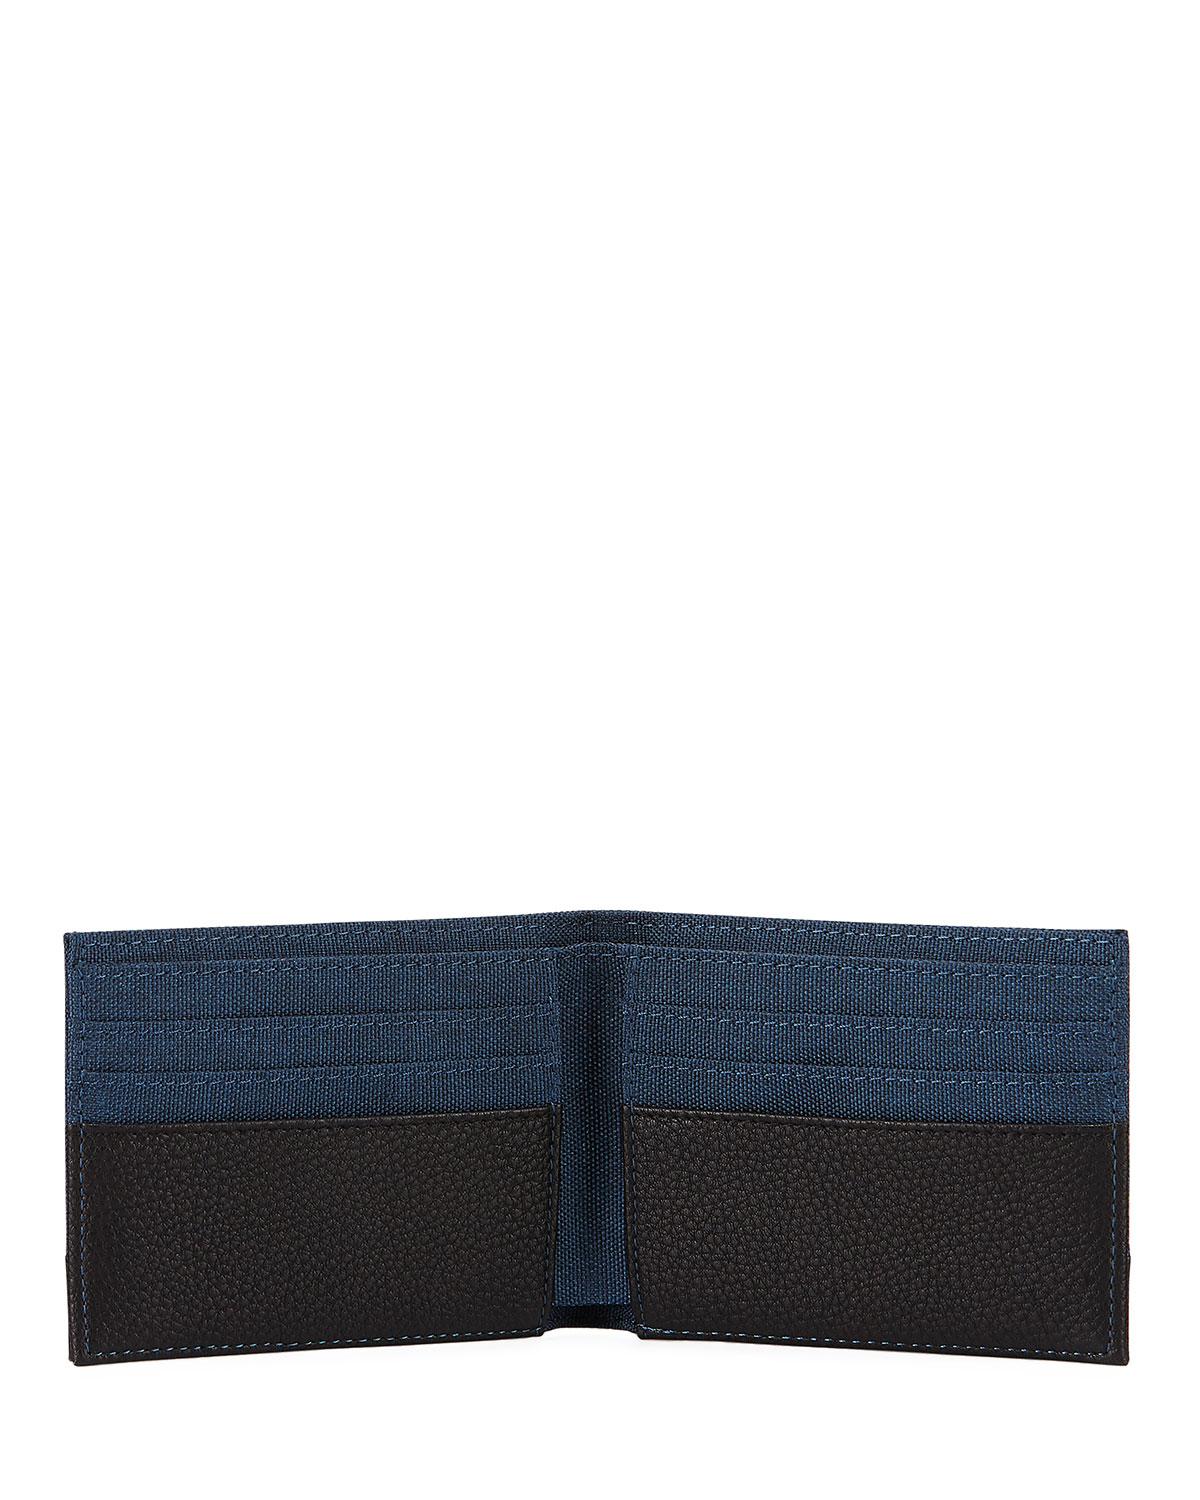 Neiman Marcus Men&#39;s Flat Fold Wallet in Black for Men - Lyst